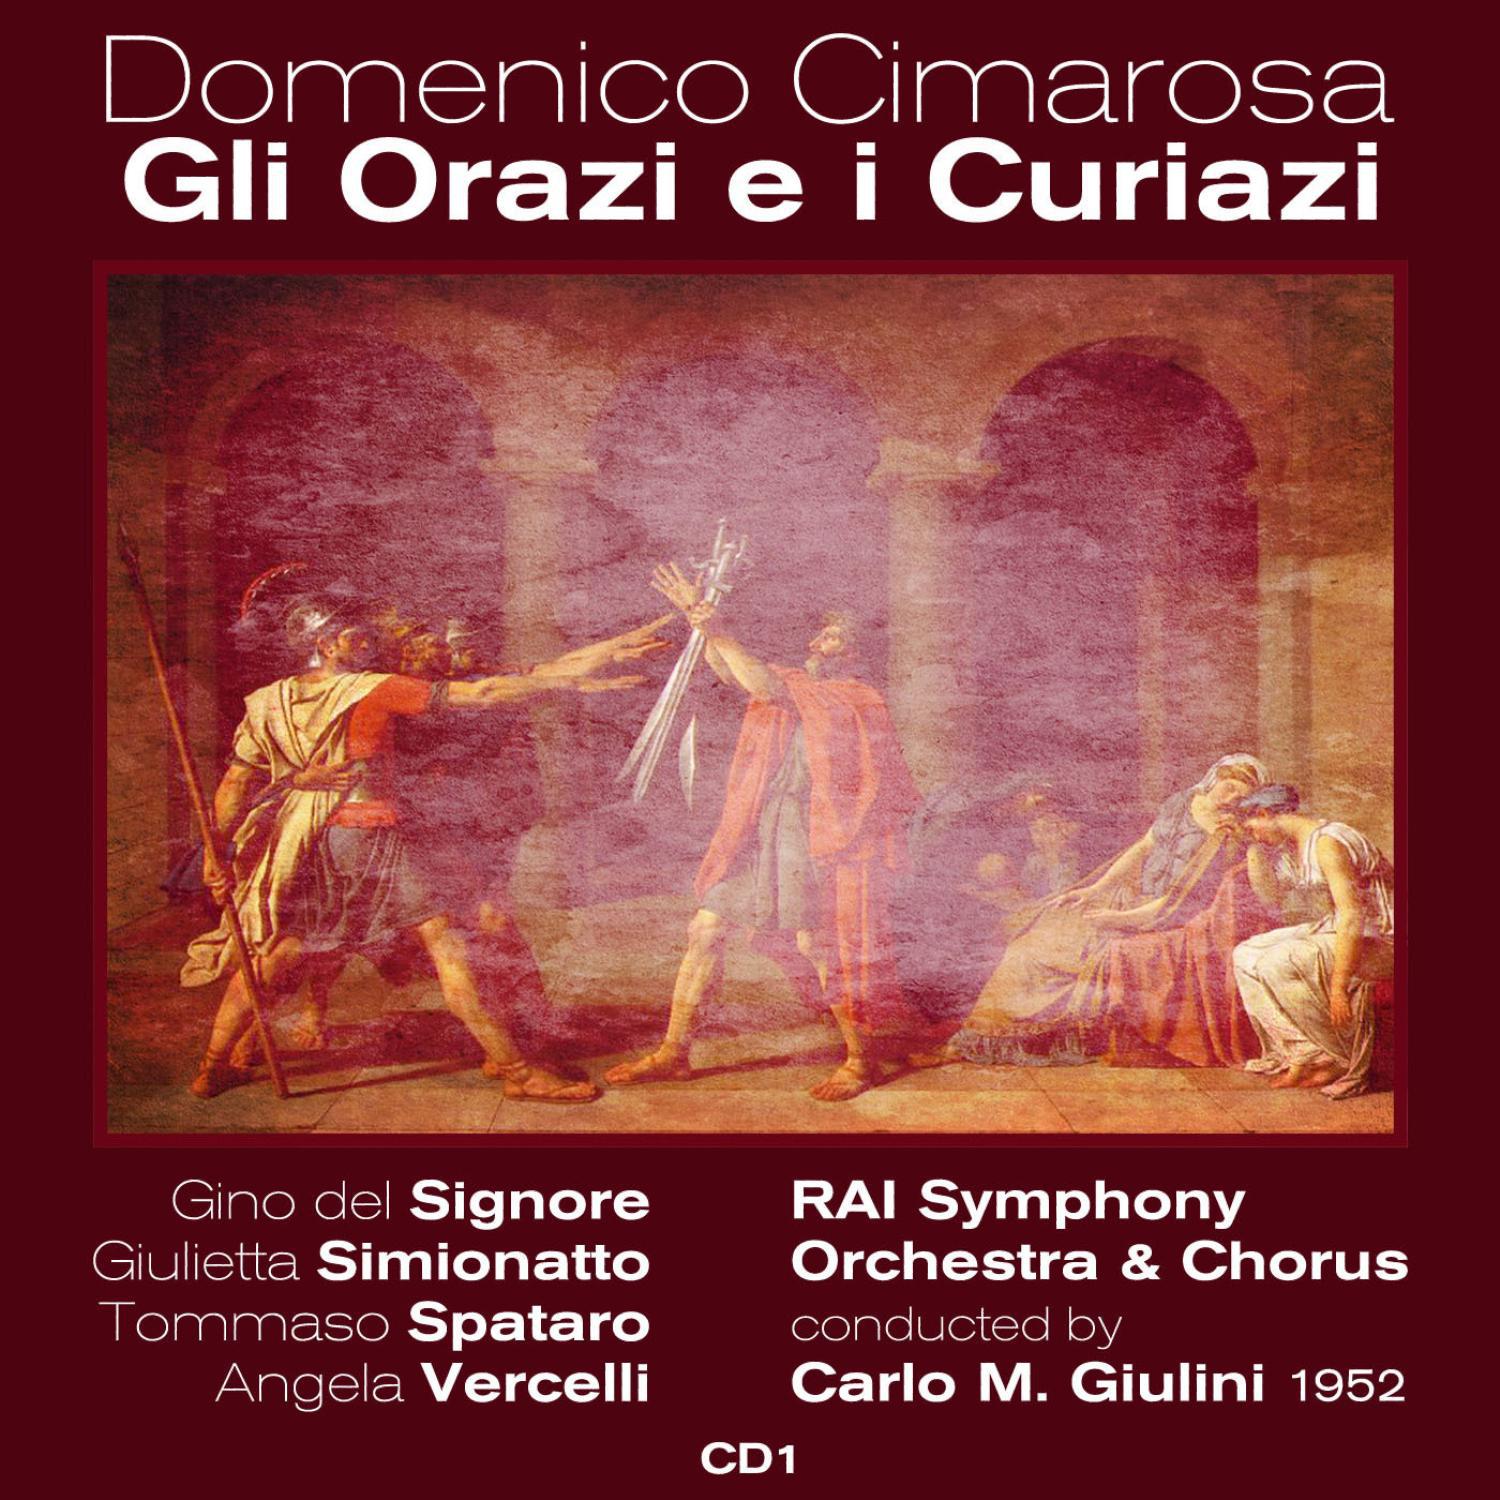 Domenico Cimarosa: Gli Orazi e i Curiazi - Act I. "Odi O Ciel I Nostri Lai"